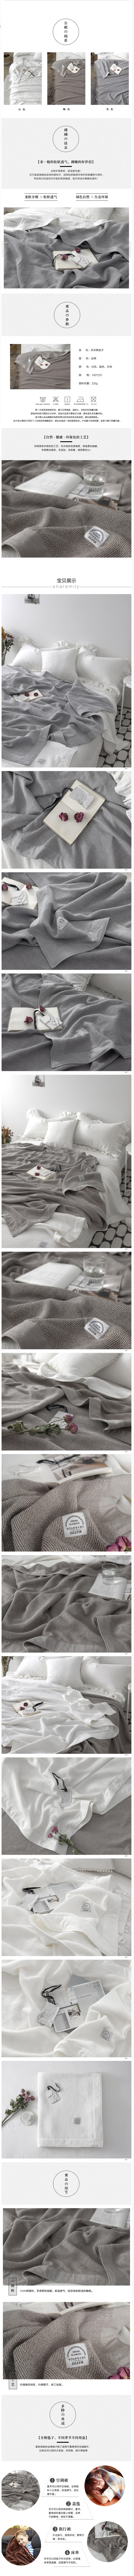 淘宝美工1207出口日本简约华夫格毯子 日式纯棉空调毛巾毯纯色双人午睡毯盖毯作品